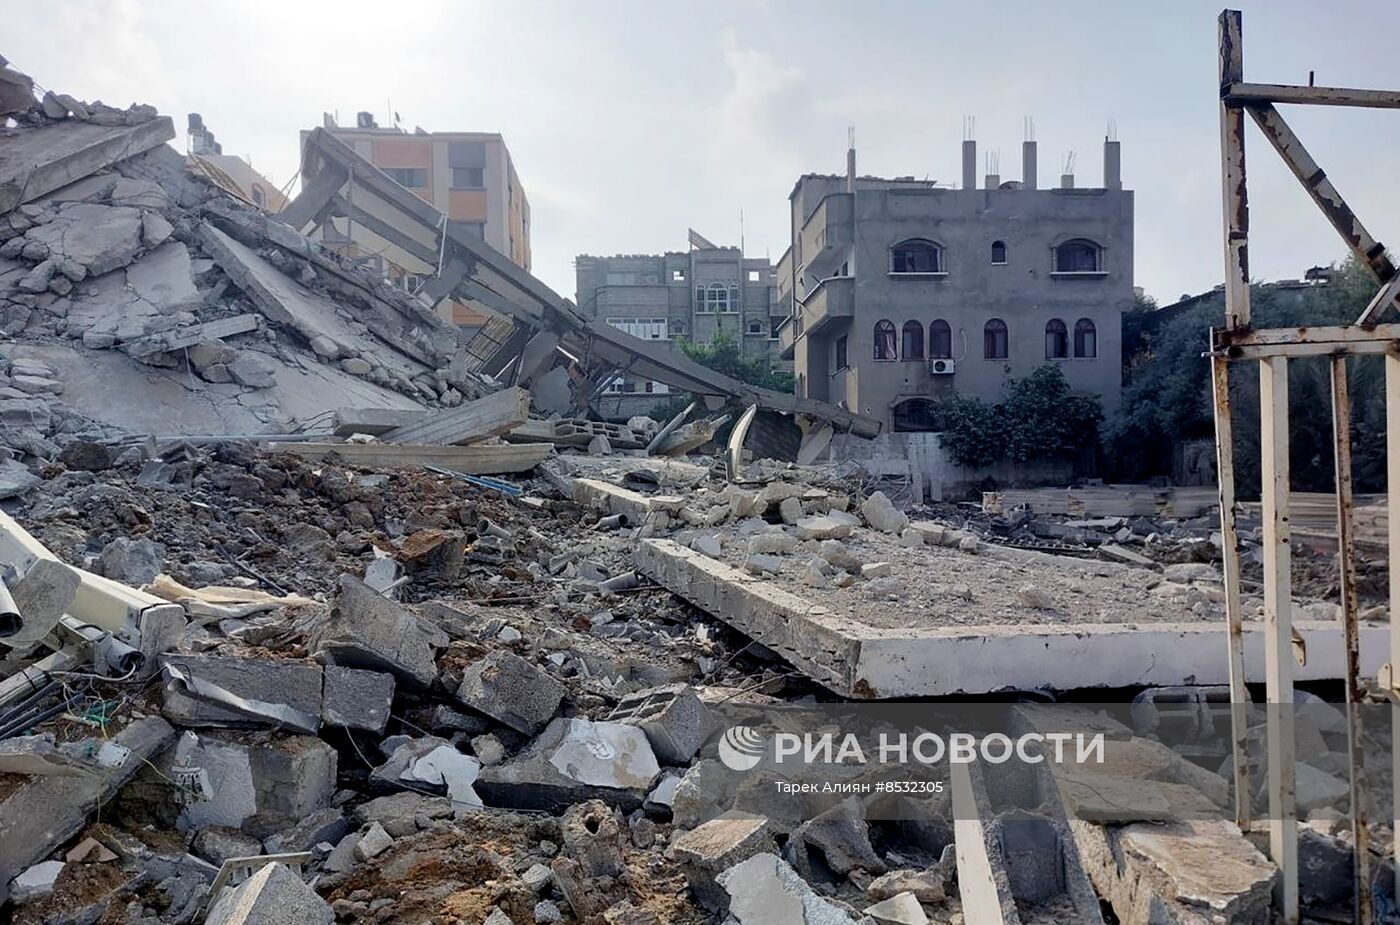 غريفيث: المساعدات التي دخلت غزة لا تكفي ونحن بحاجة إلى المزيد